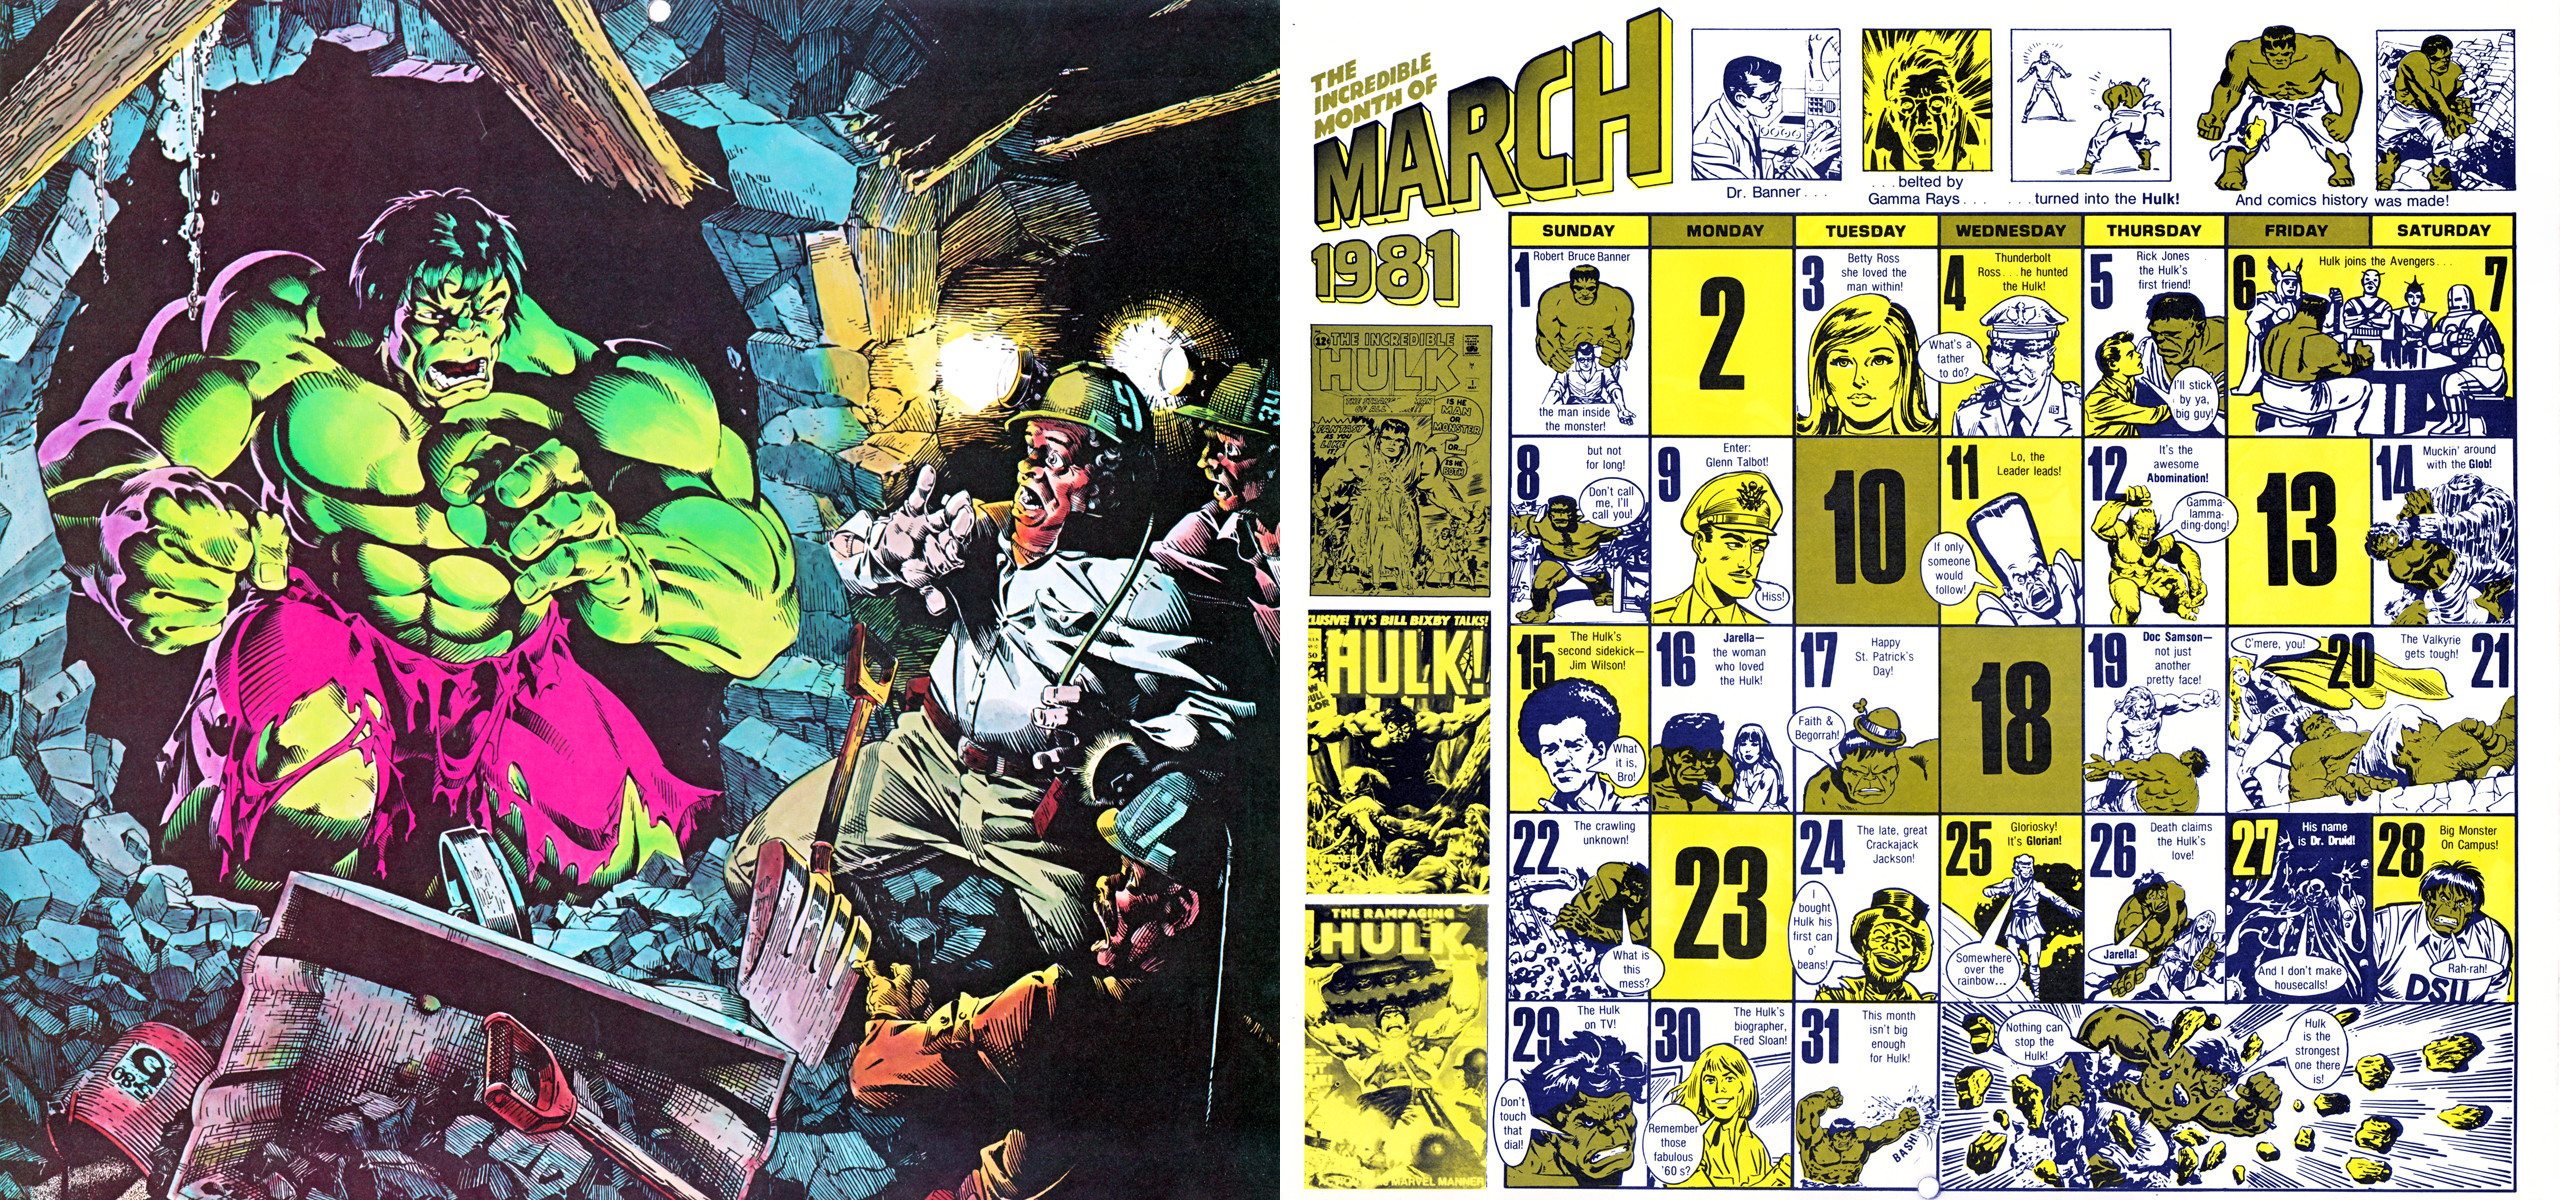 2560x1200 1981/2015 Marvel Comics Calendar - March